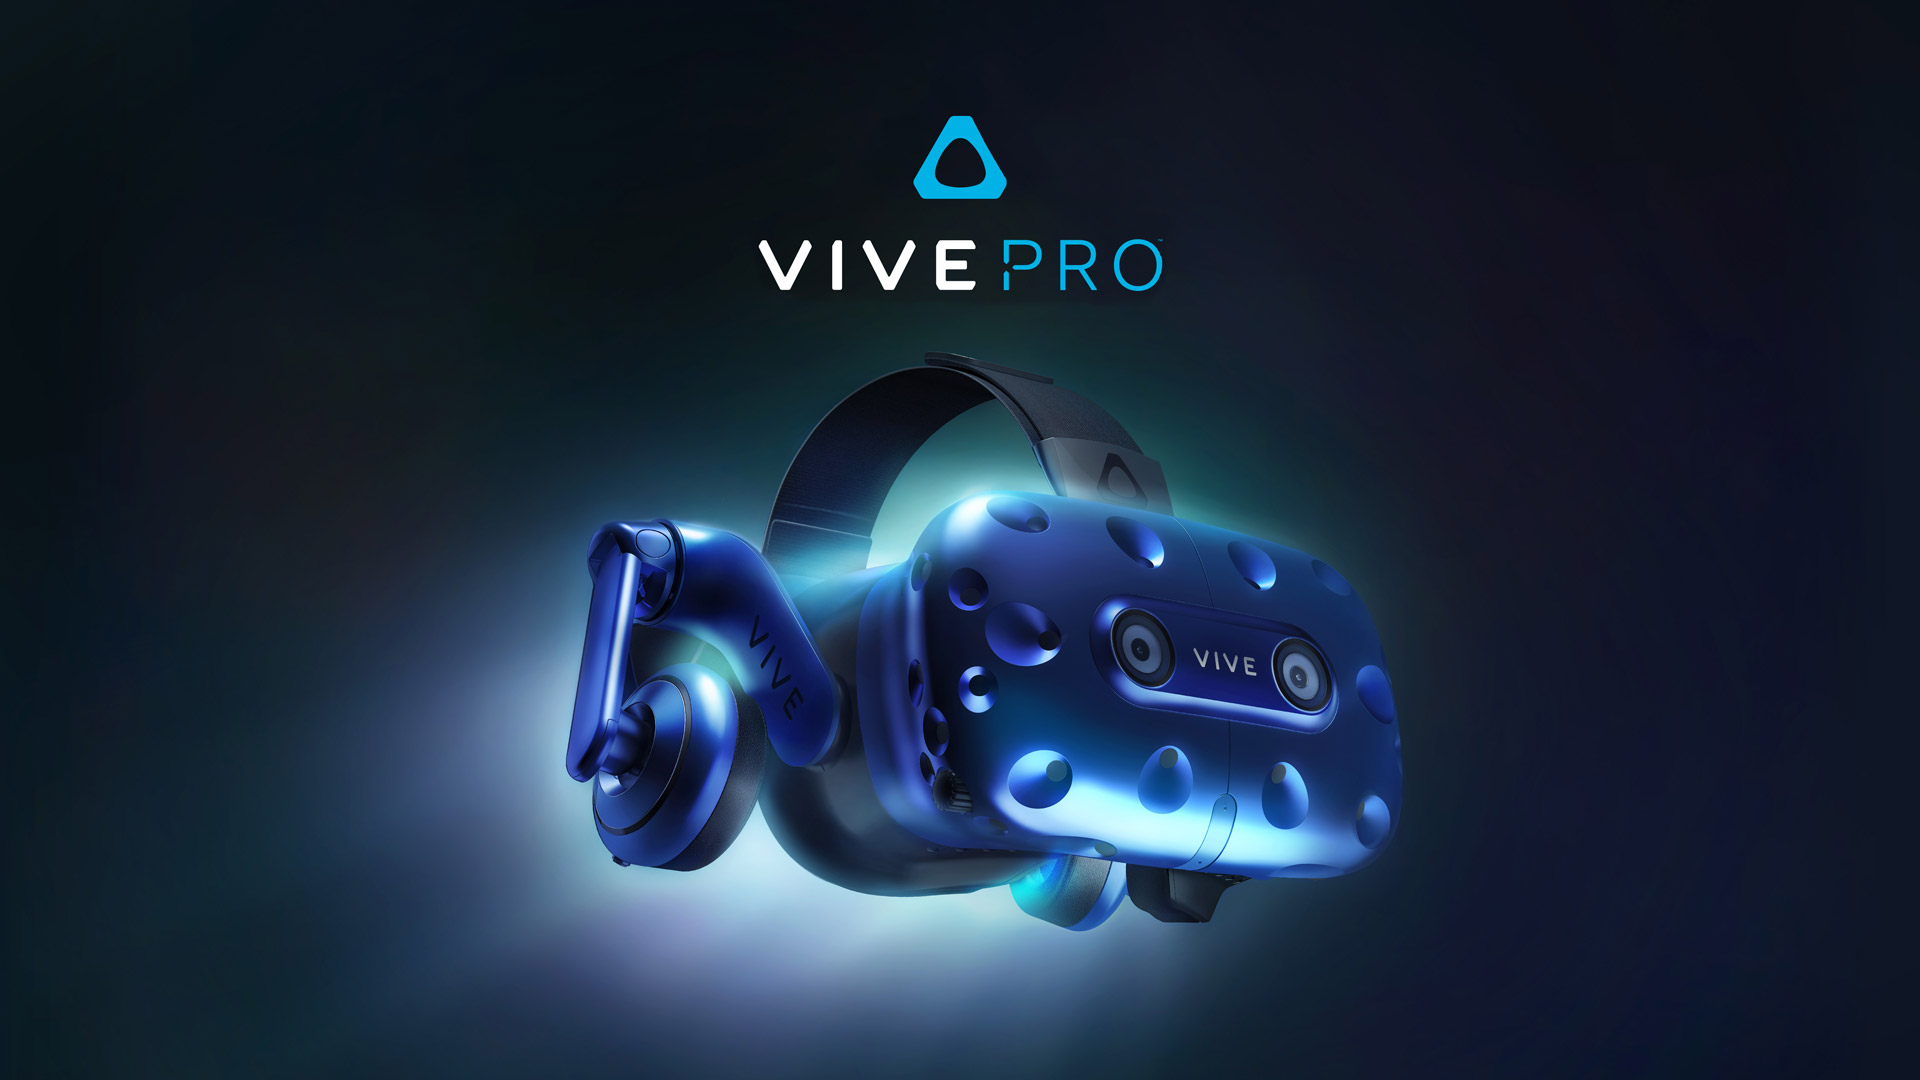 HTC объявила, что гарнитура Vive Pro стала доступна для предзаказа по цене $799